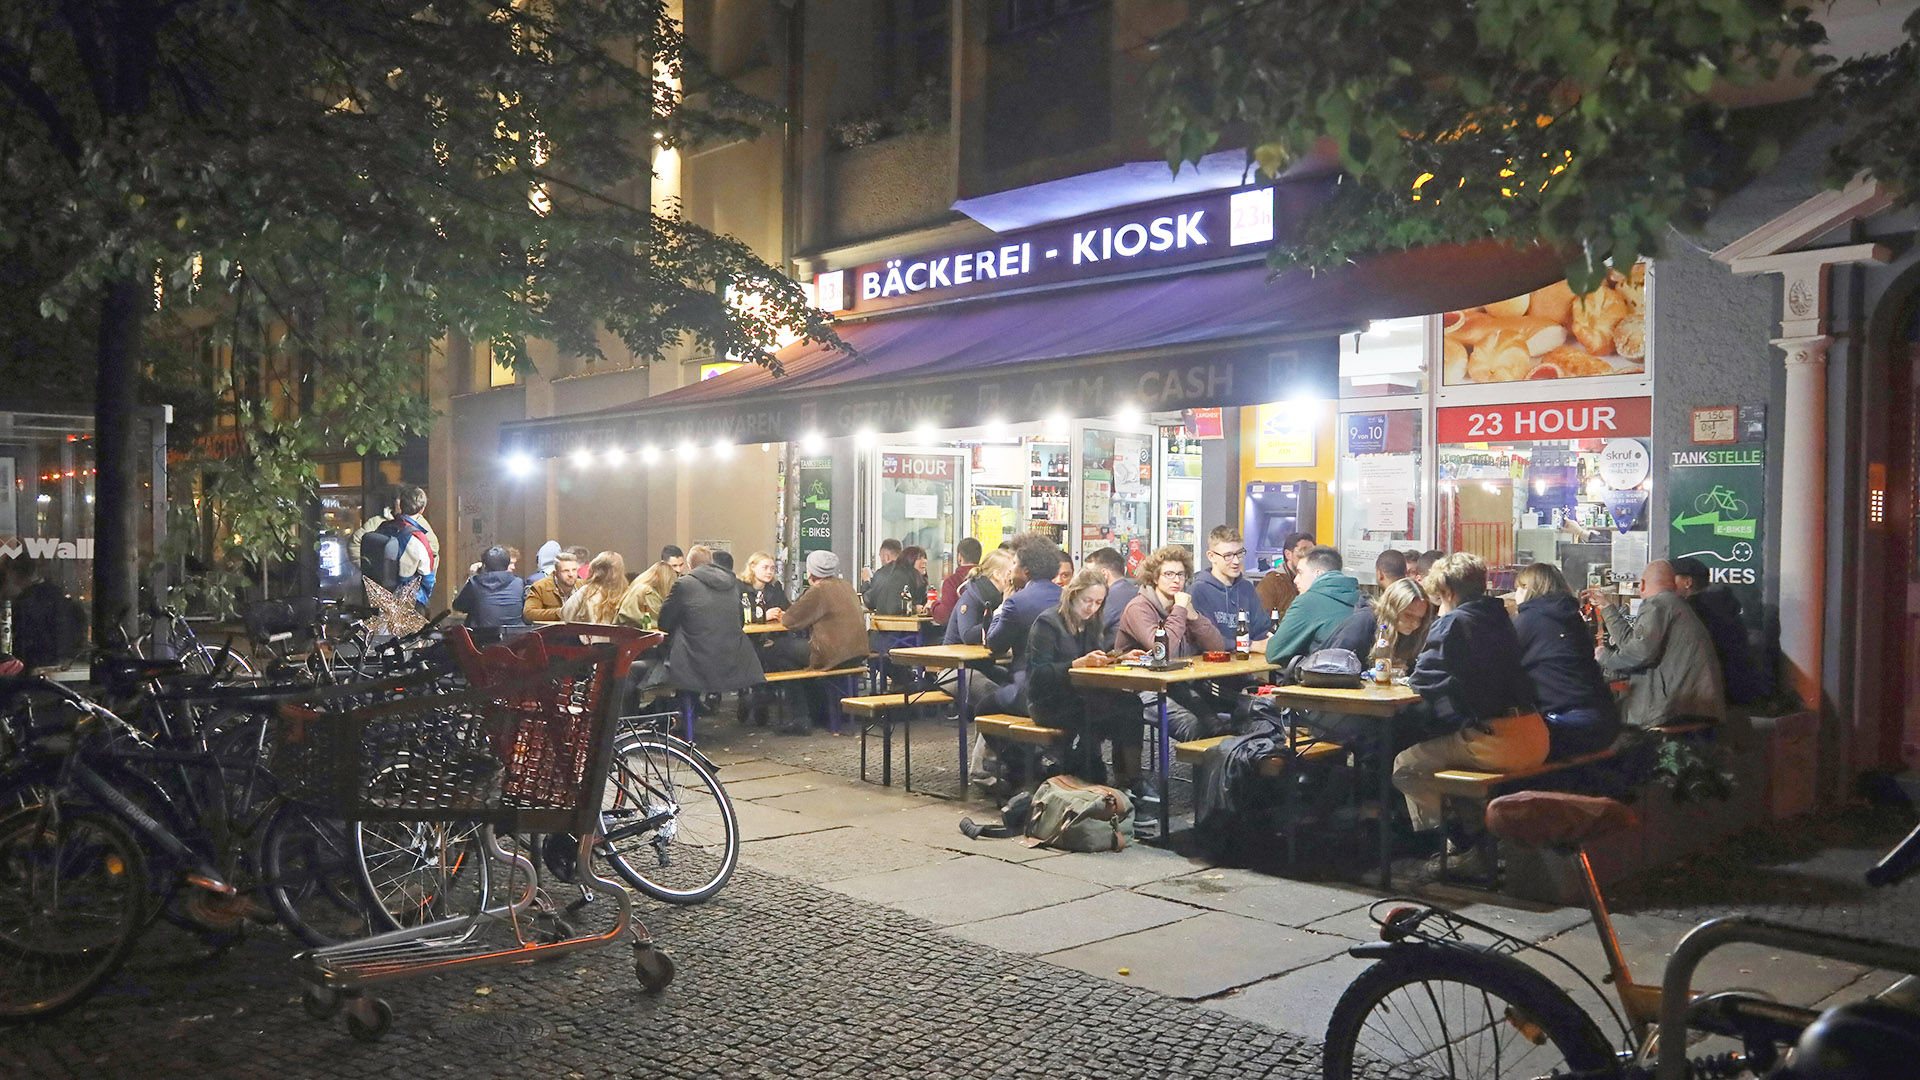 Archivbild: Junge Leute sitzen nachts in Berlin vor einem Kiosk / Spätkauf. (Quelle: imago images/Gudath)